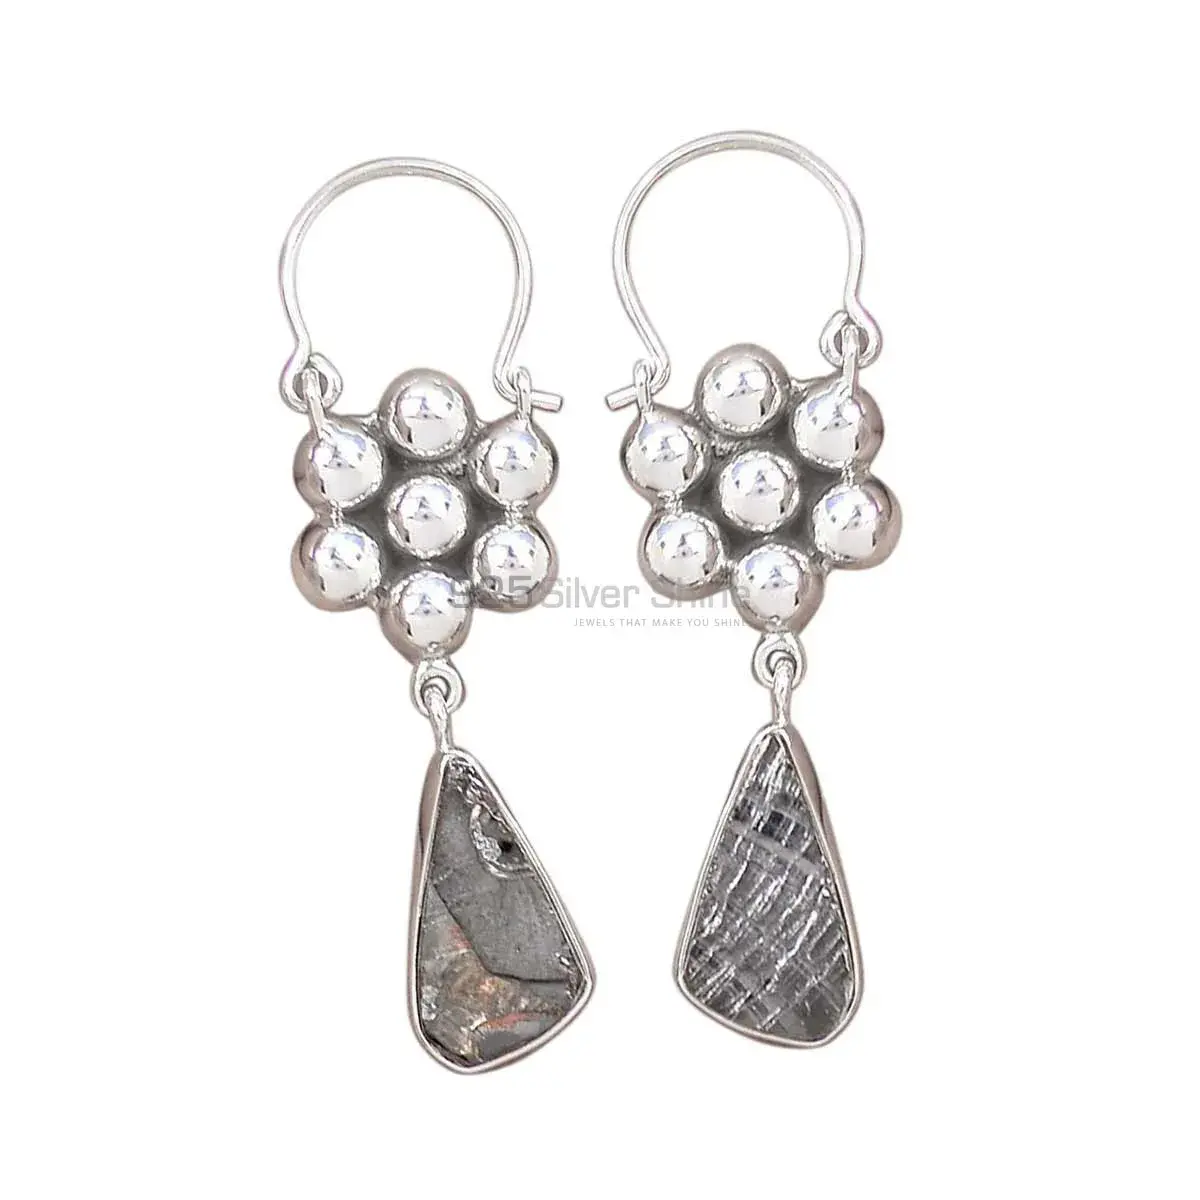 Genuine Black Tourmaline Gemstone Earrings Suppliers In 925 Sterling Silver Jewelry 925SE3081